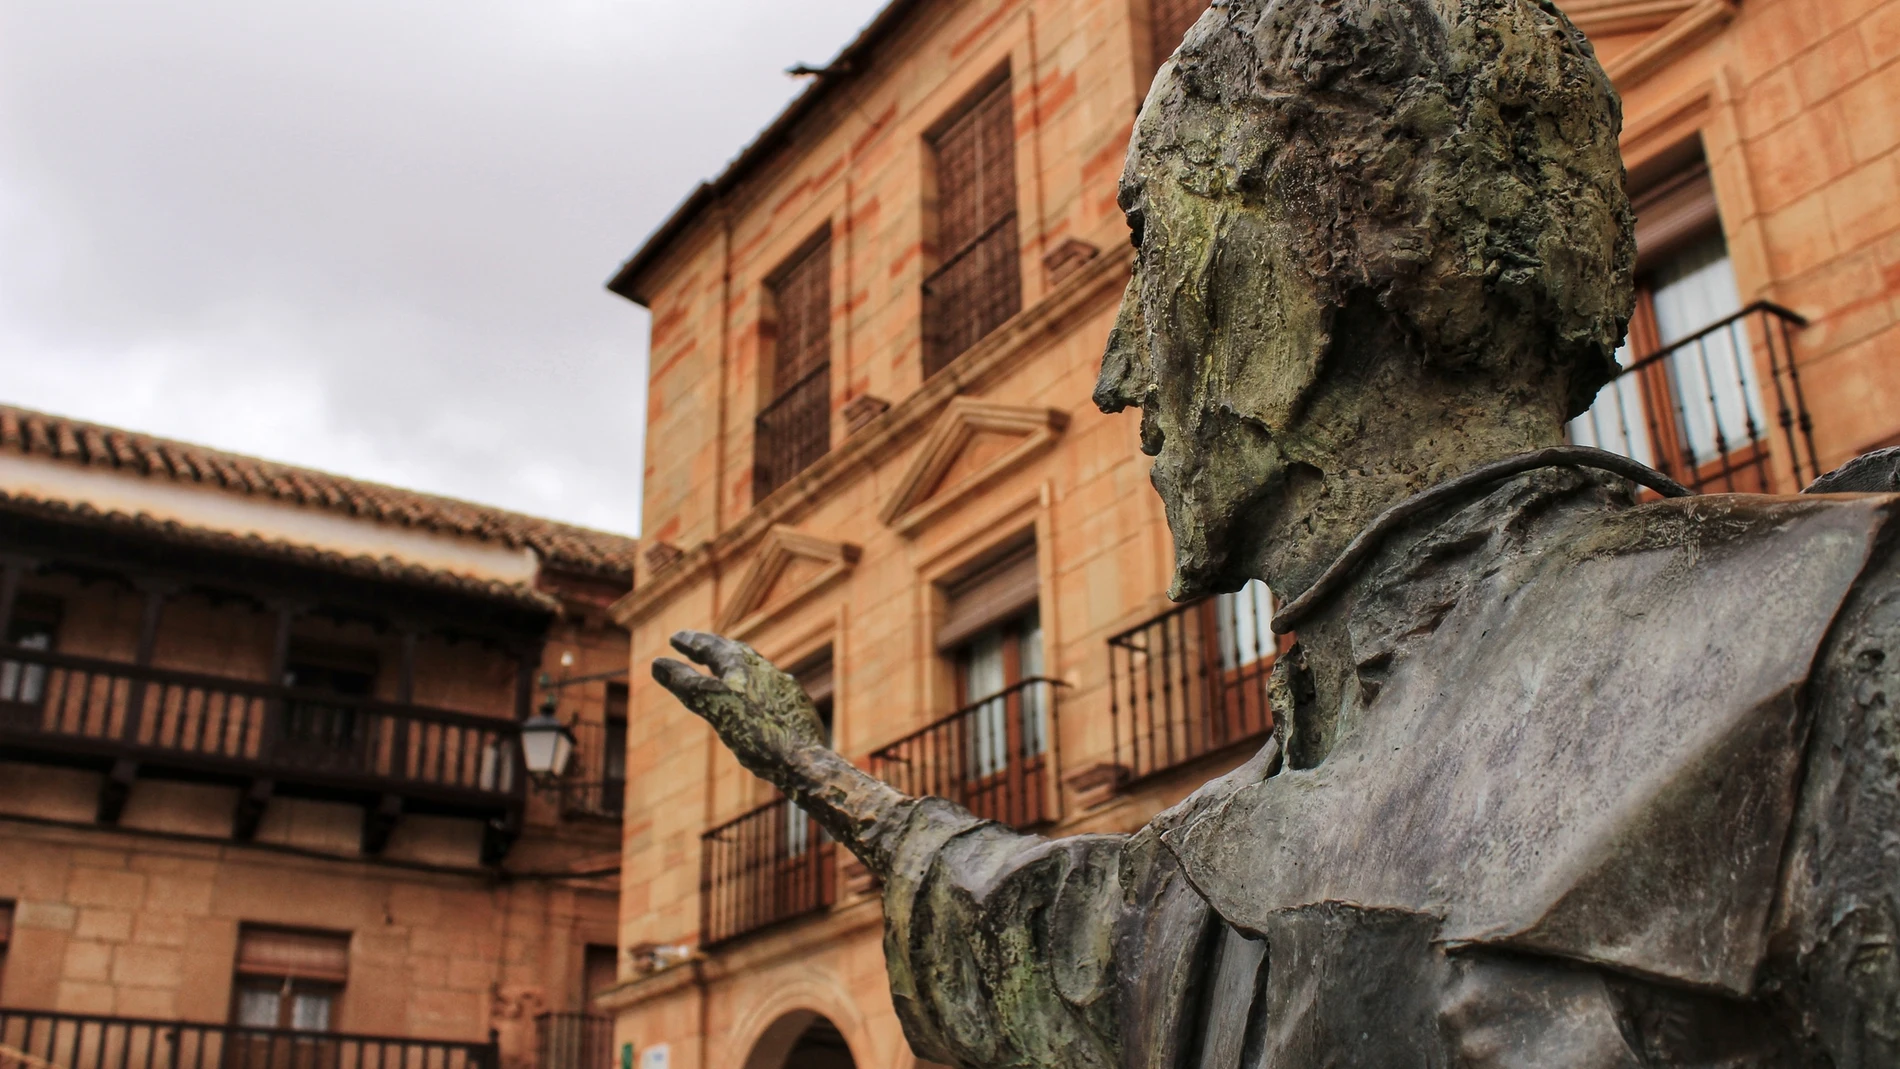 Plaza de Villanueva de los Infantes con la estatua de Don Quijote.